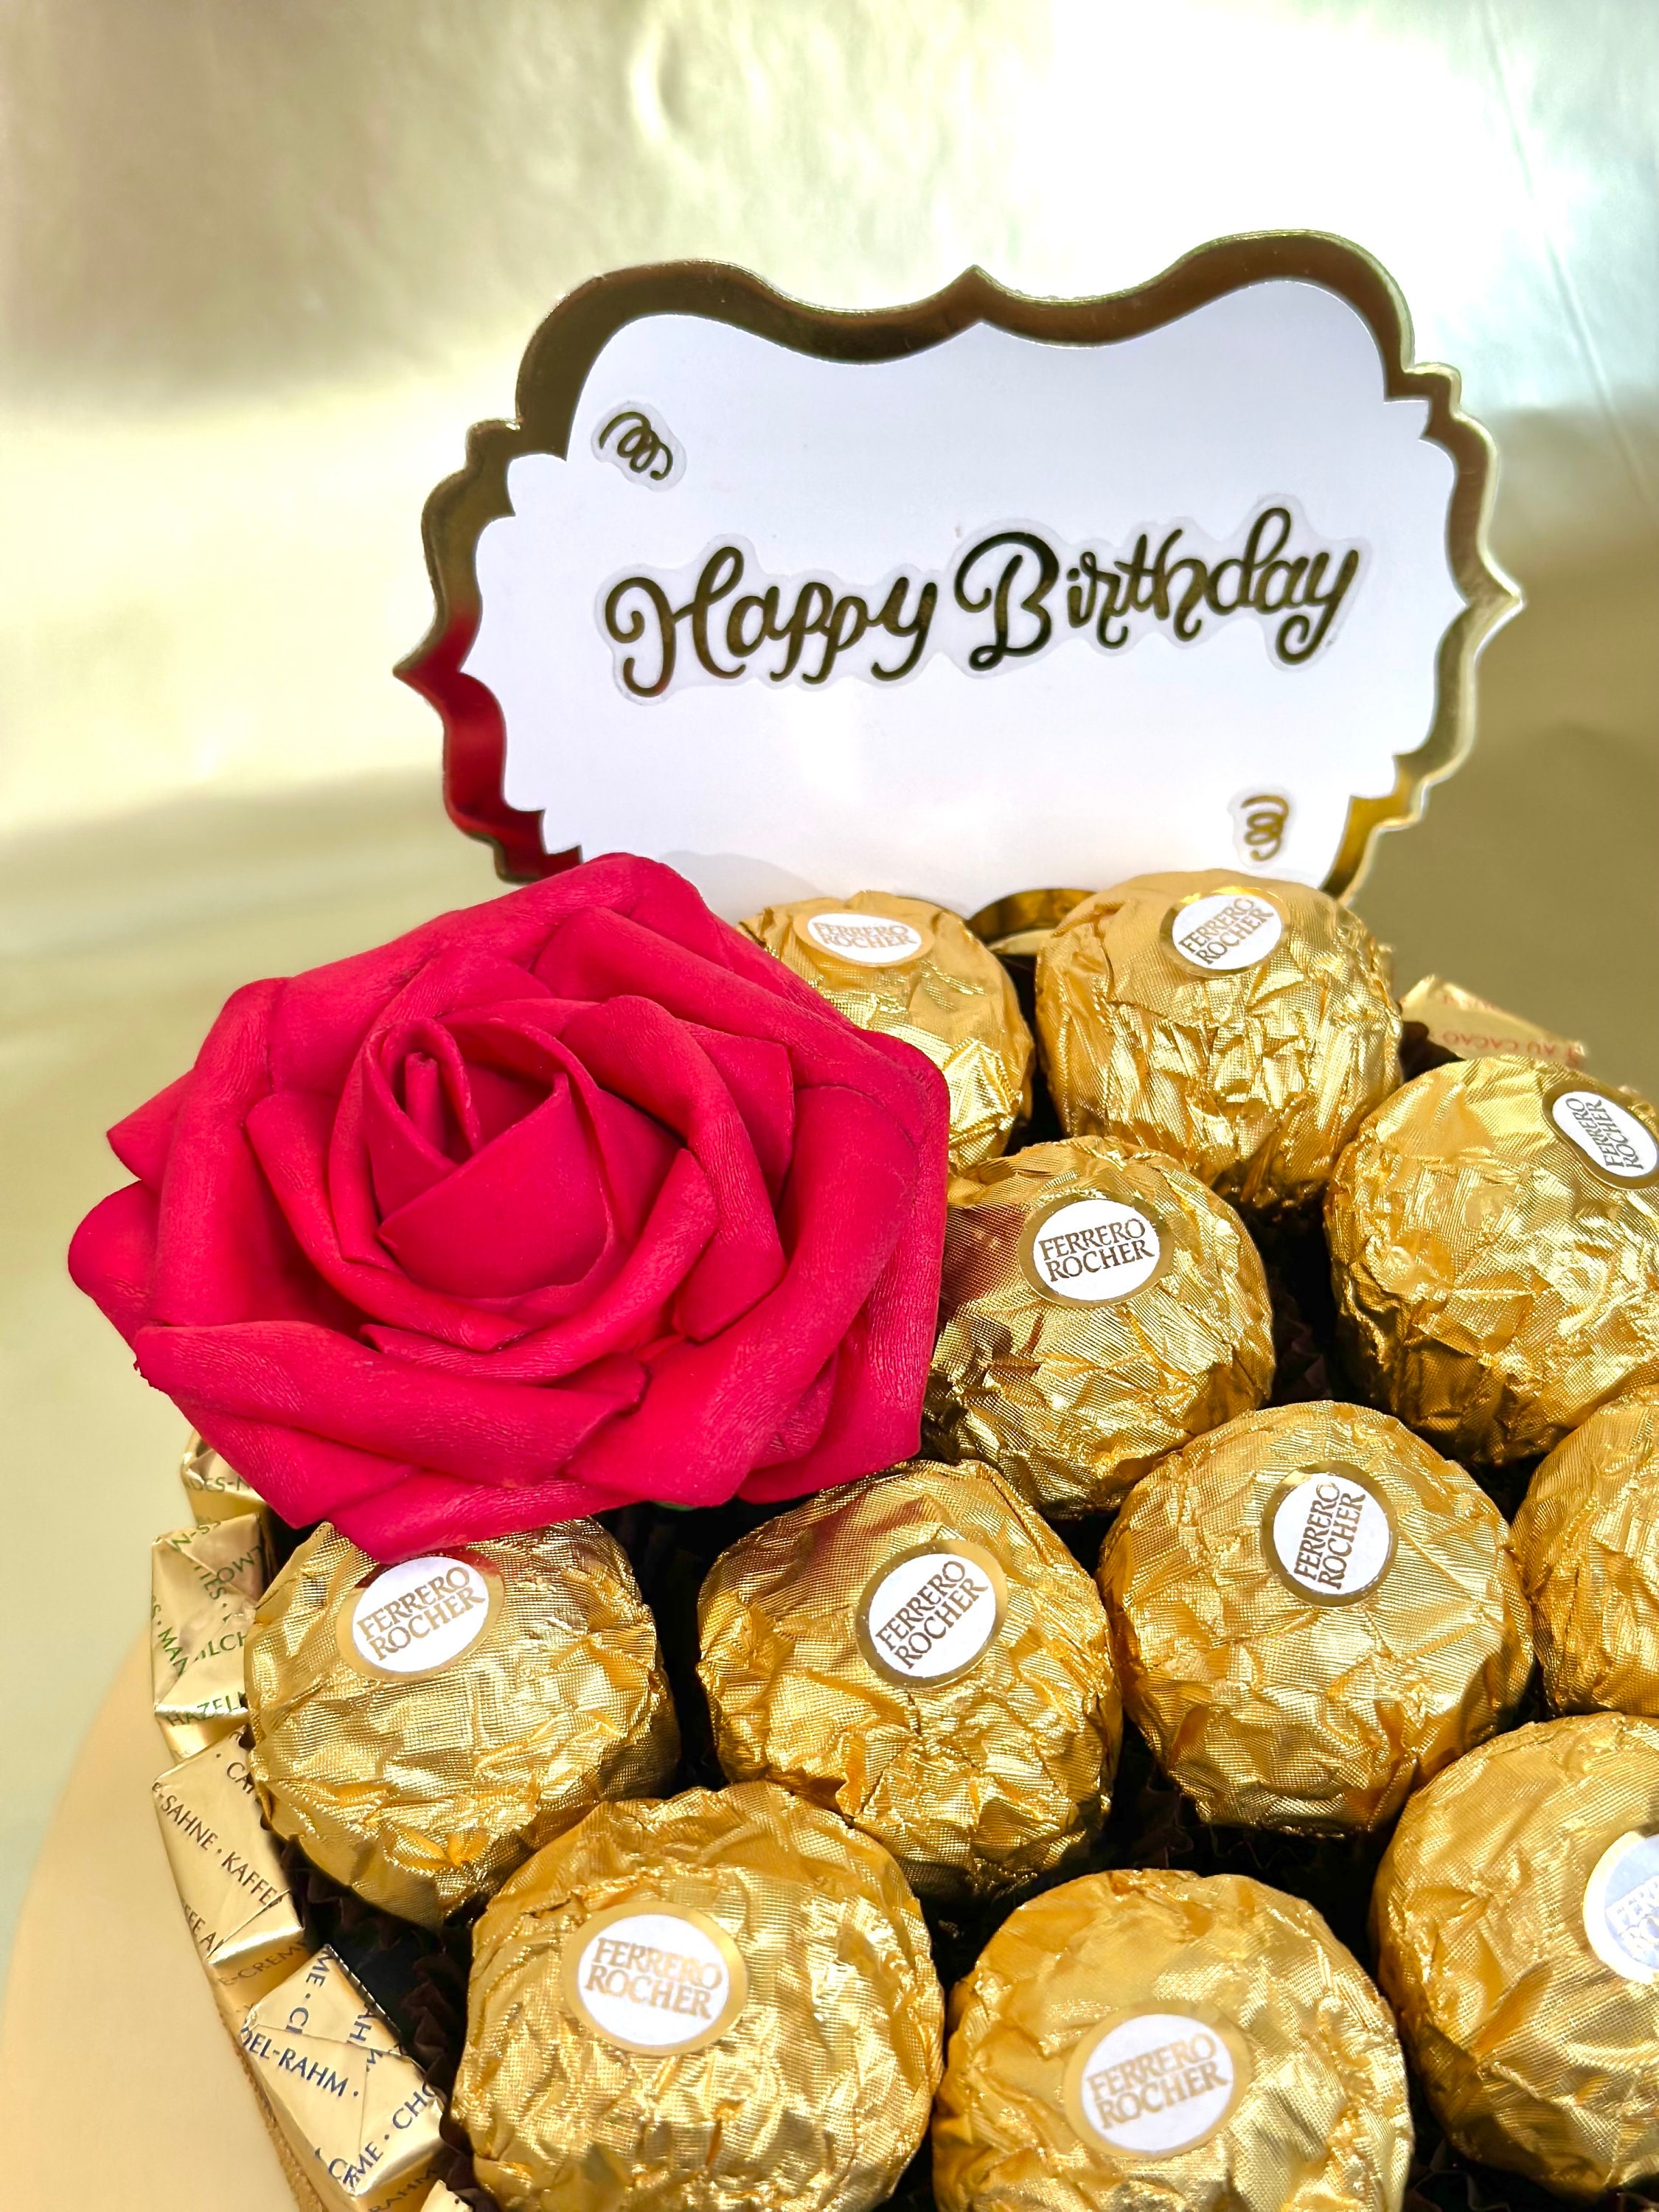 Luxury Black Rose Chocolate Ferrero Rocher Gift Box, Birthday Gift